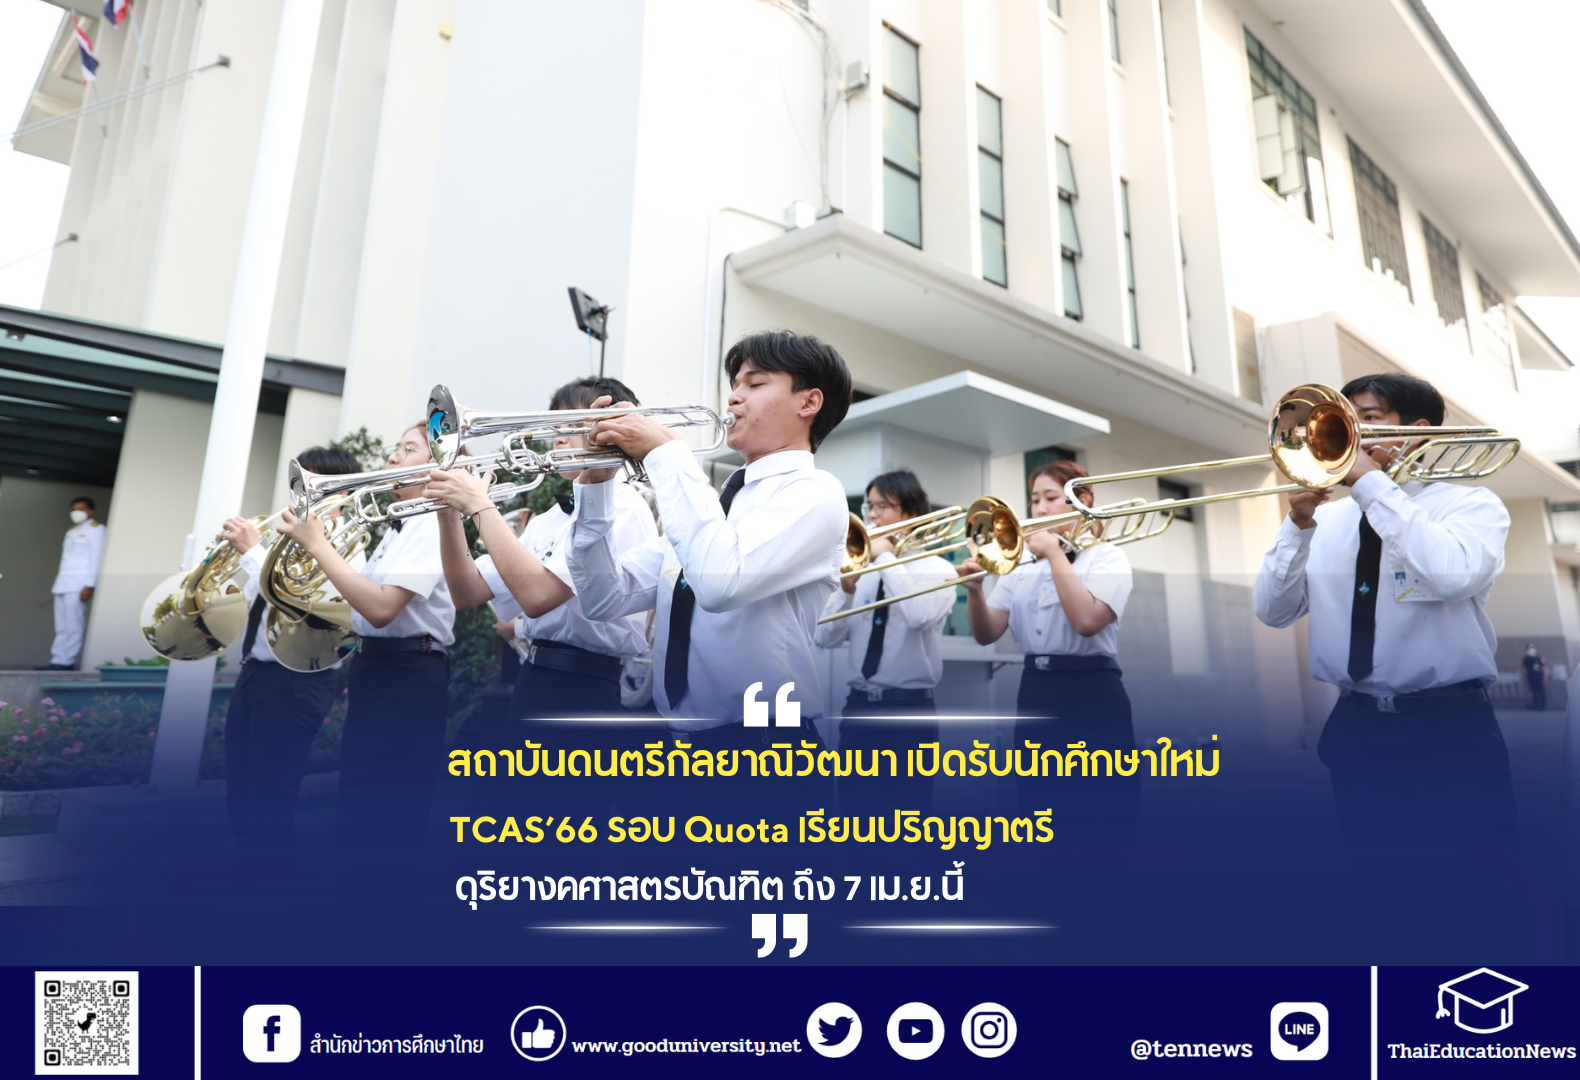 สถาบันดนตรีกัลยาณิวัฒนา เปิดรับสมัครนักศึกษาใหม่ TCAS’66 รอบ Quota เรียนปริญญาตรี ดุริยางคศาสตรบัณฑิต ถึง 7 เม.ย.นี้